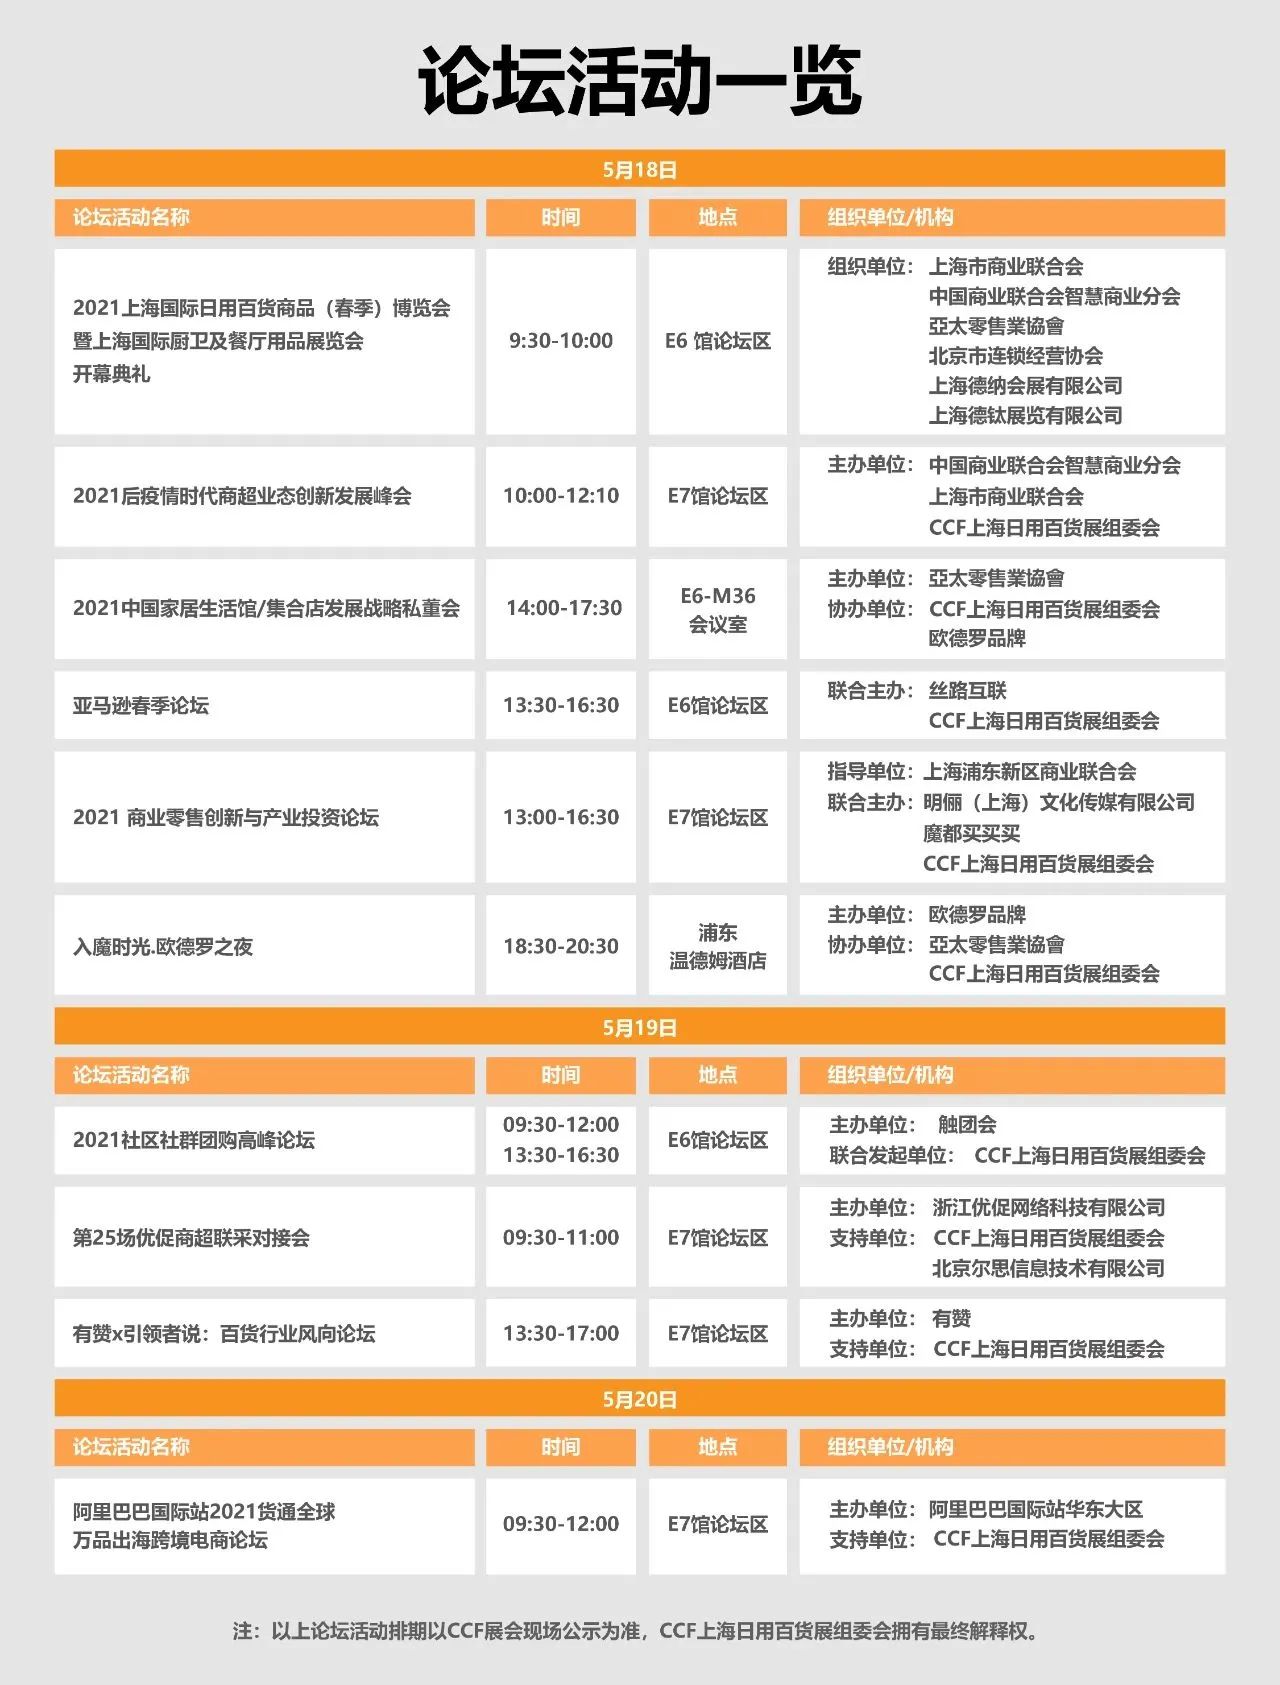 CCF 2021上海日用百货春季展暨上海国际厨卫及餐厅用品展将于5月18-20日召开